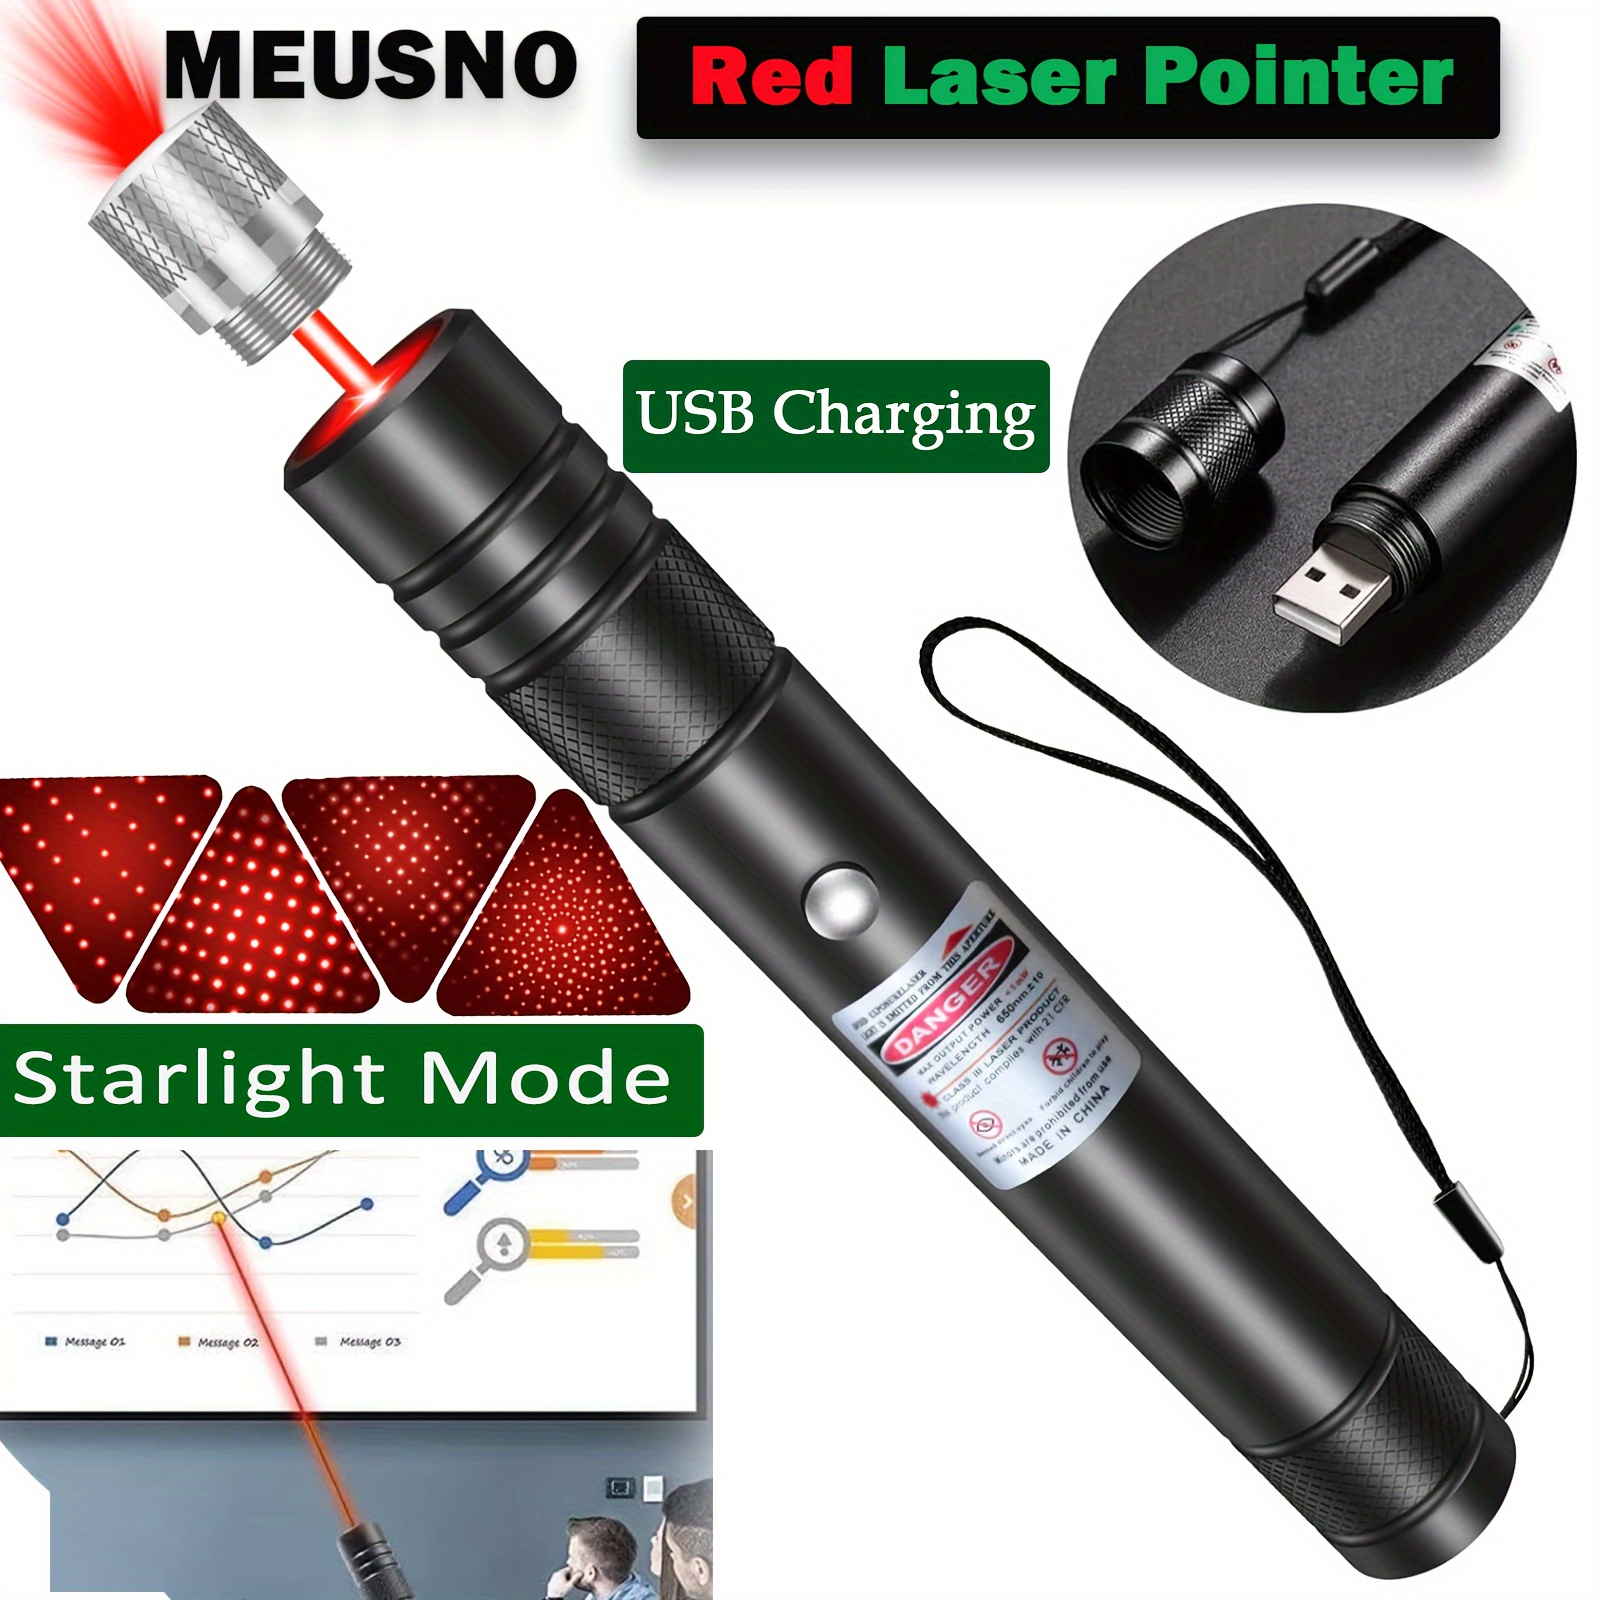 Pointeur Laser Département Des Ventes Stylo Laser Pointeur À Rayon